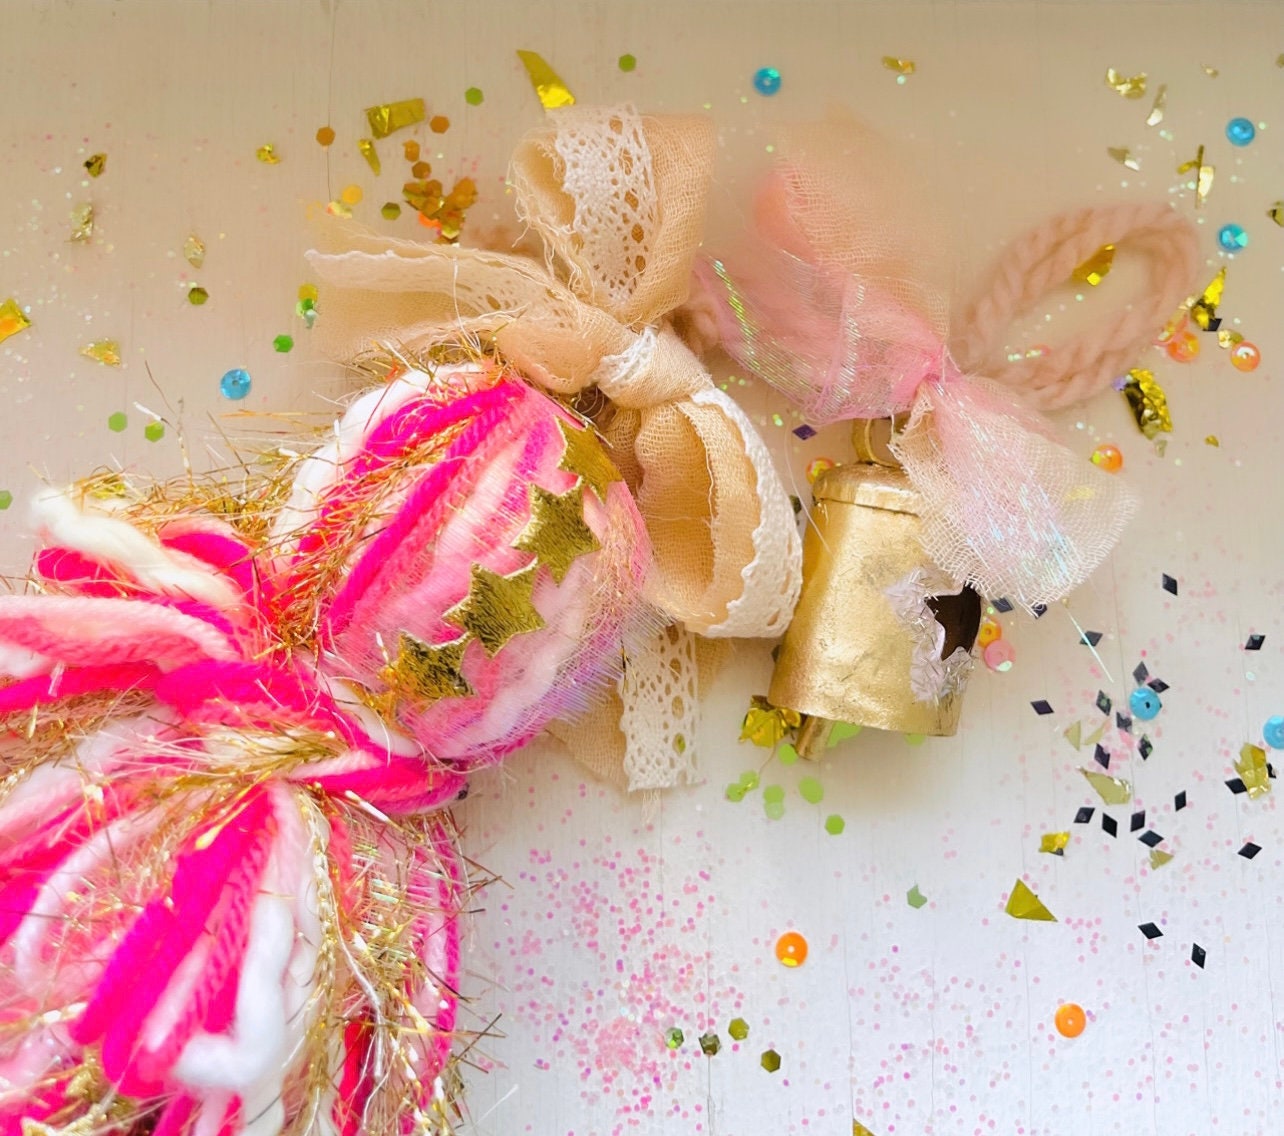 Pink tassel Garland,hot pink tassel garland,Pink Tissue paper garland,Pink  tassels,pink party decorations,pink bachelorette party decoration